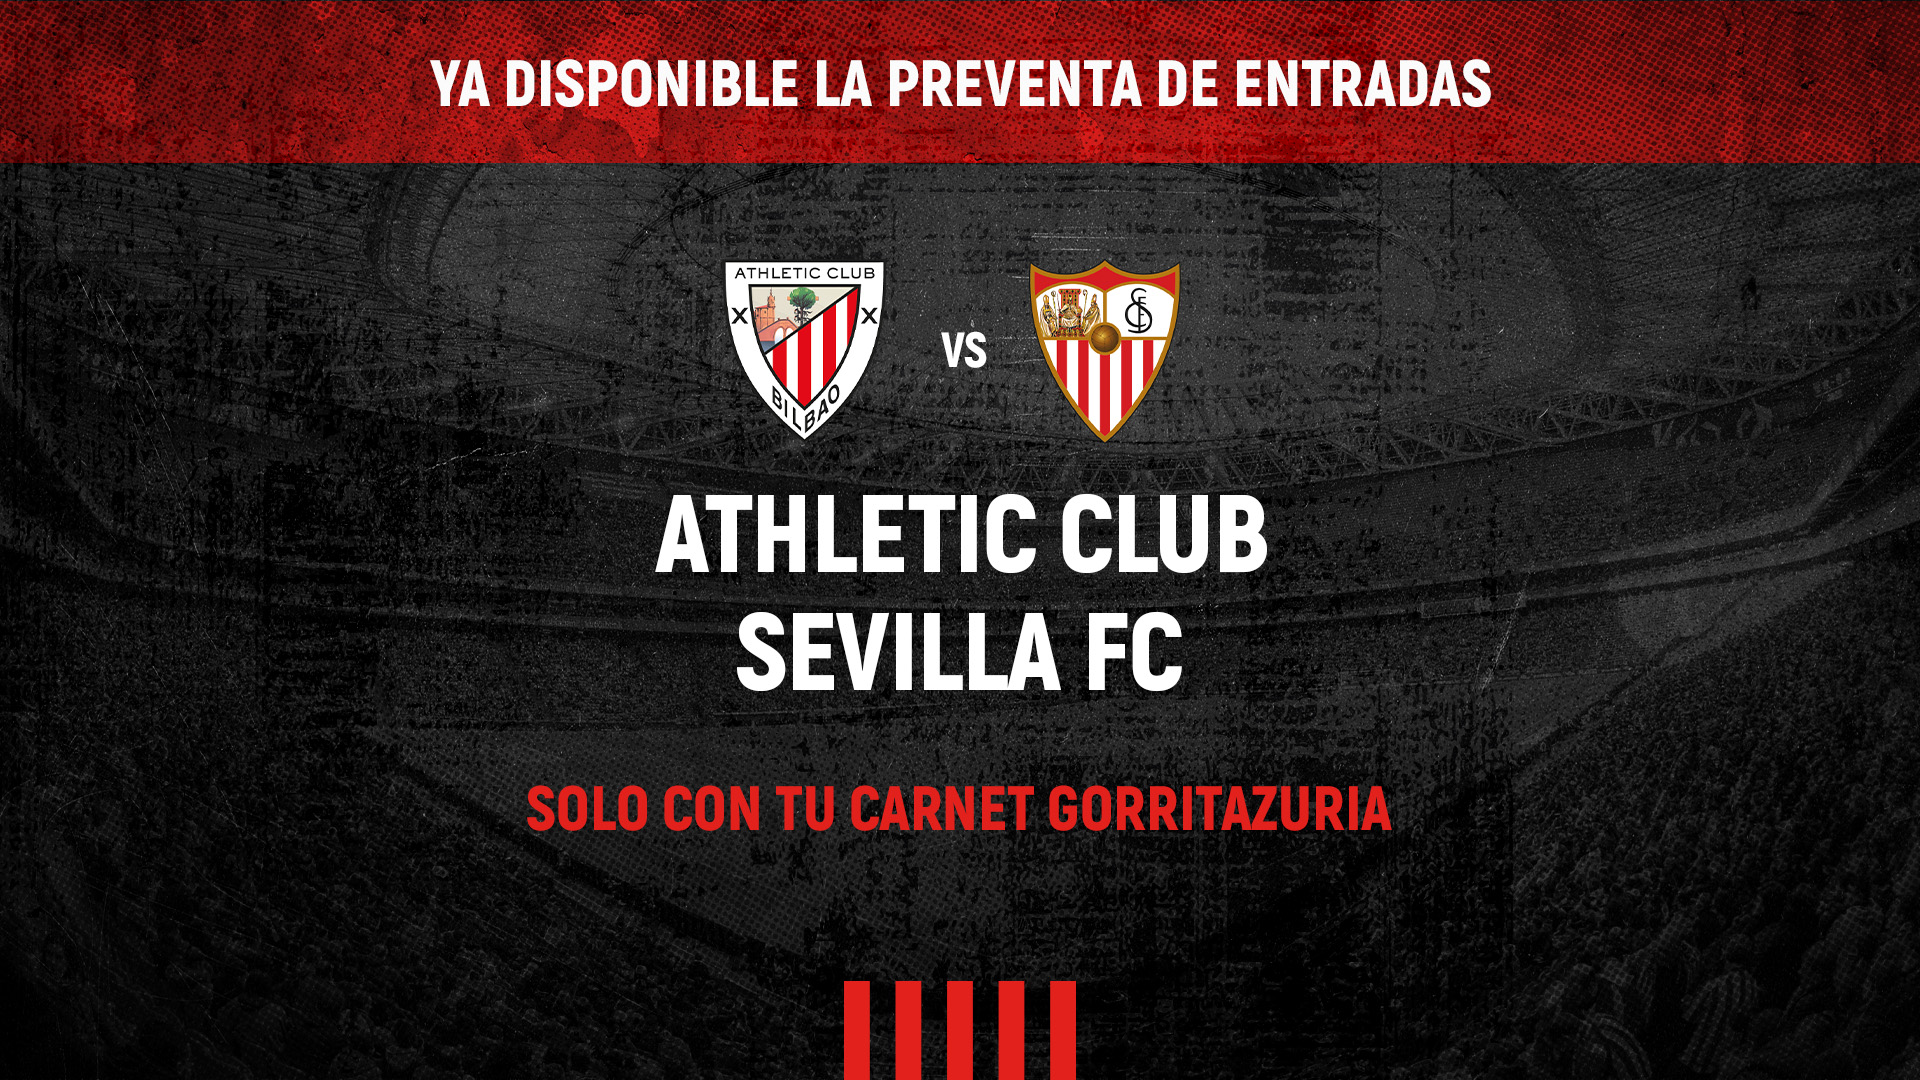 ENTRADAS PARA EL ATHLETIC CLUB-SEVILLA FC